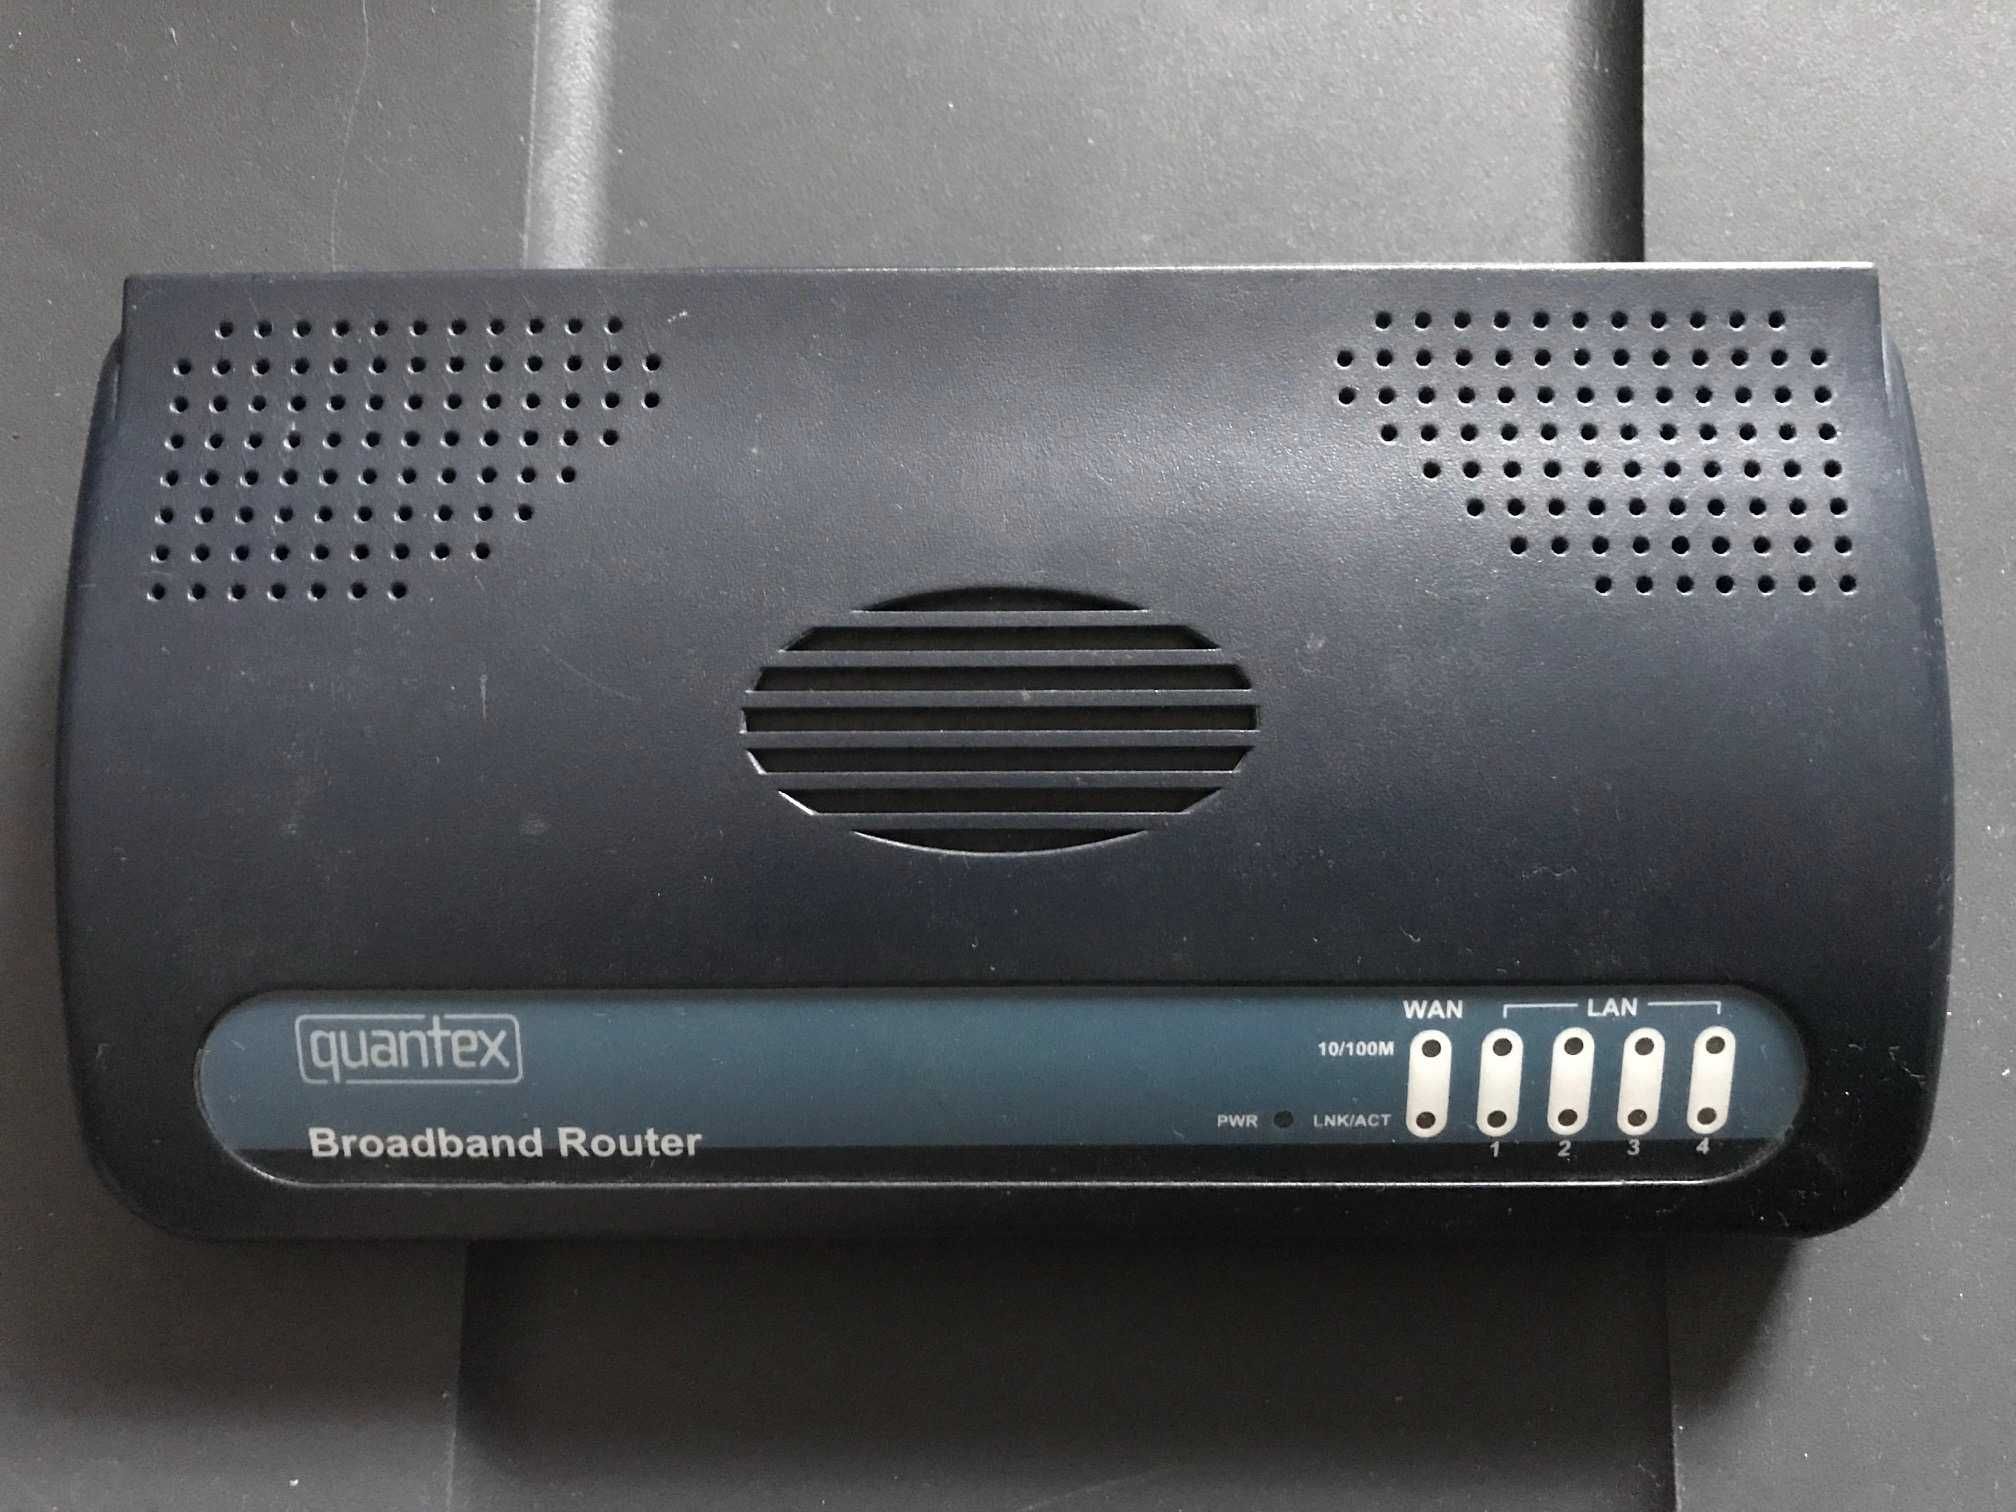 Vand Broadband Router Quantex